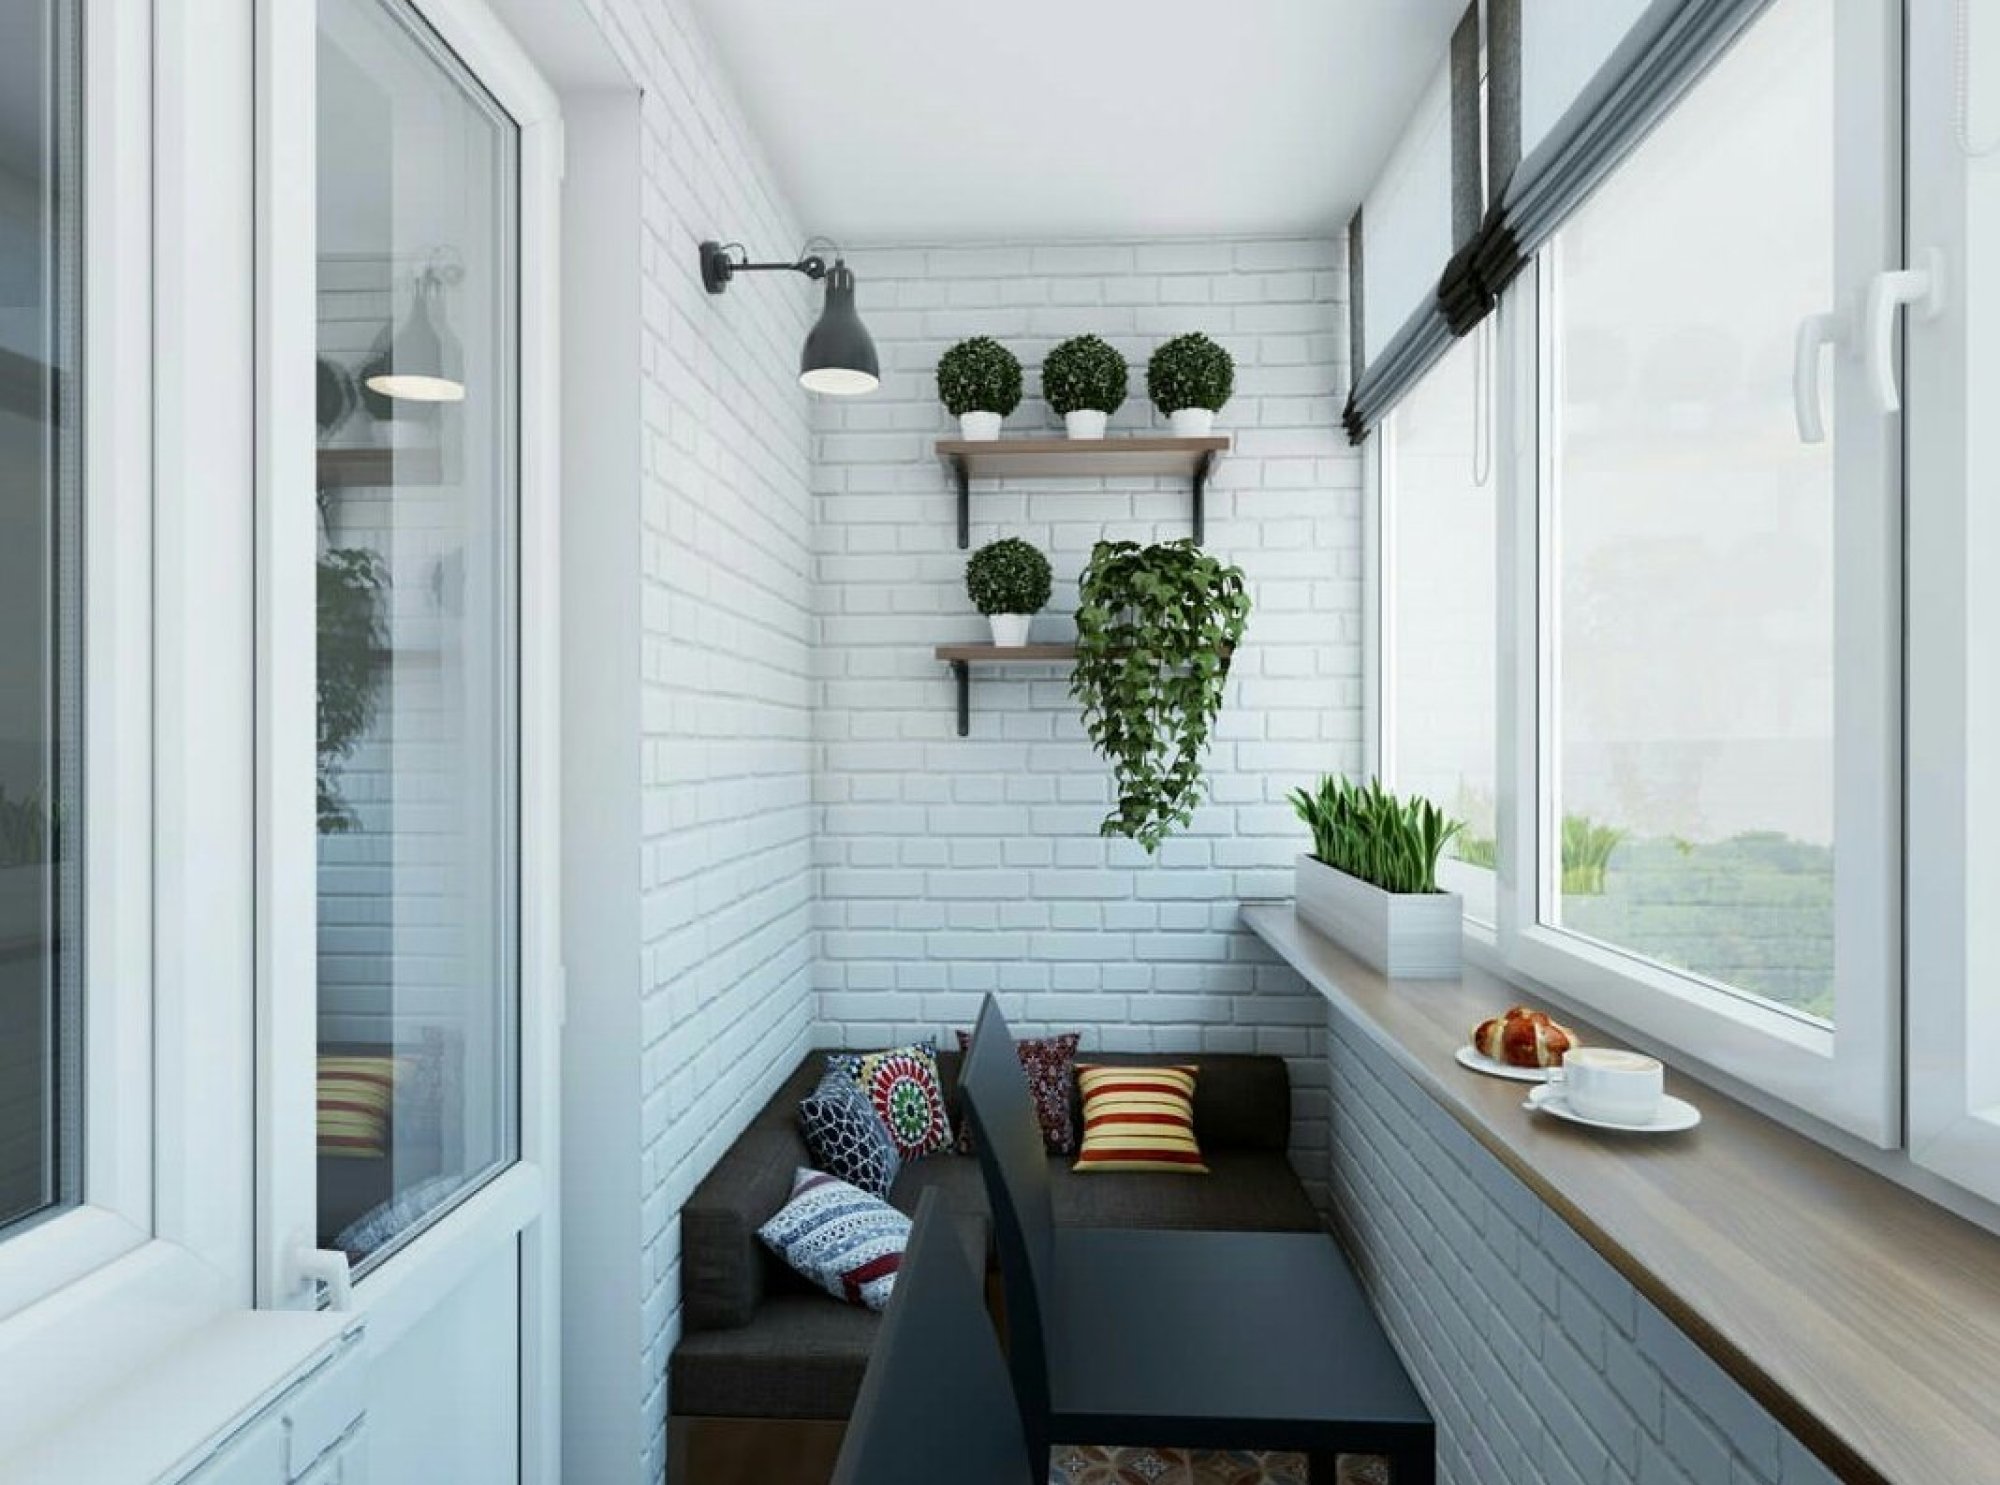 Интерьер однокомнатной квартиры с балконом